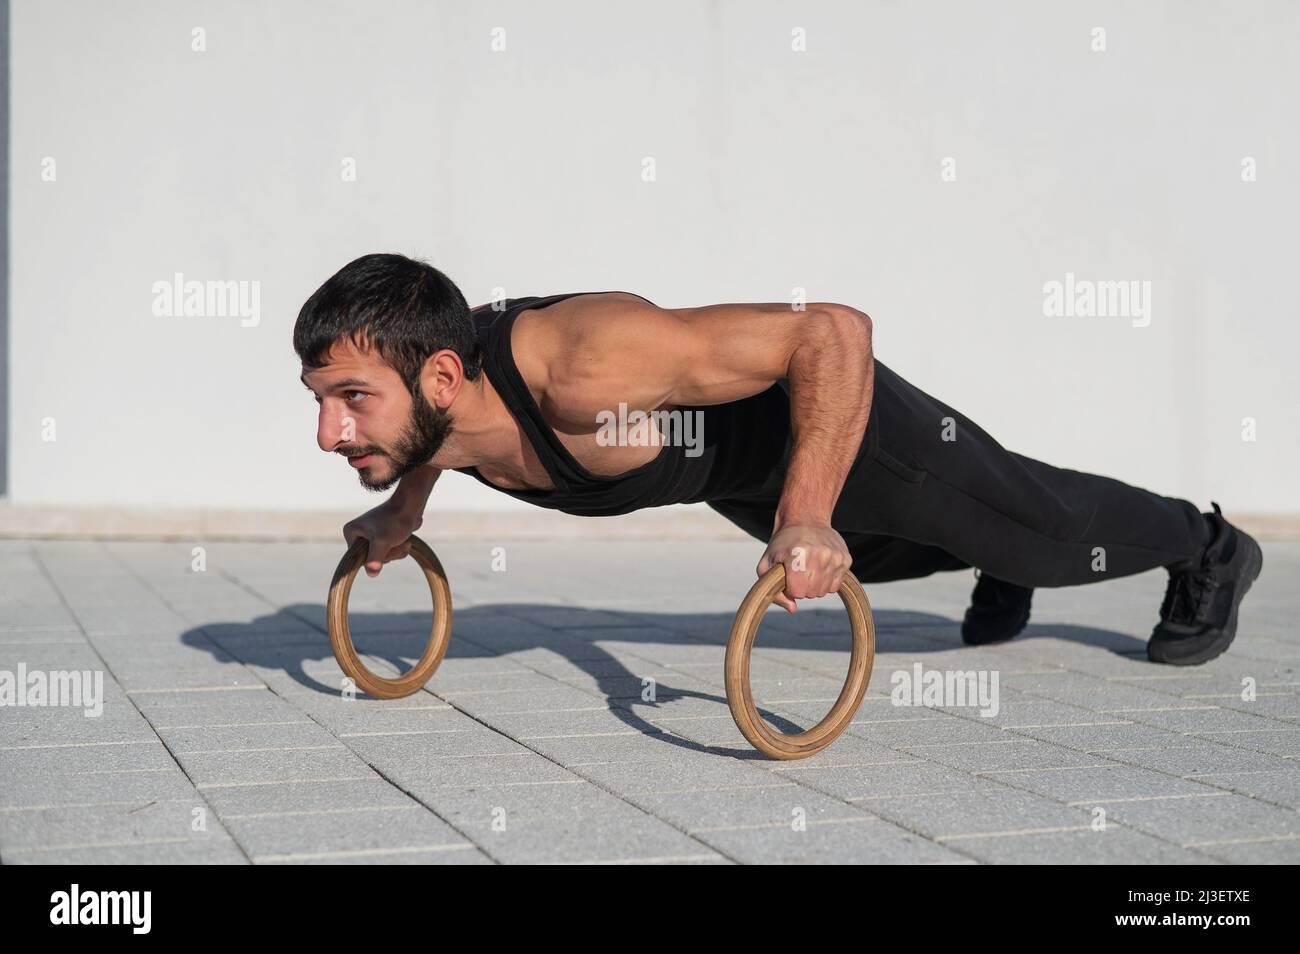 Ein Mann in schwarzer Sportkleidung, der im Freien Ring-Liegestütze macht  Stockfotografie - Alamy